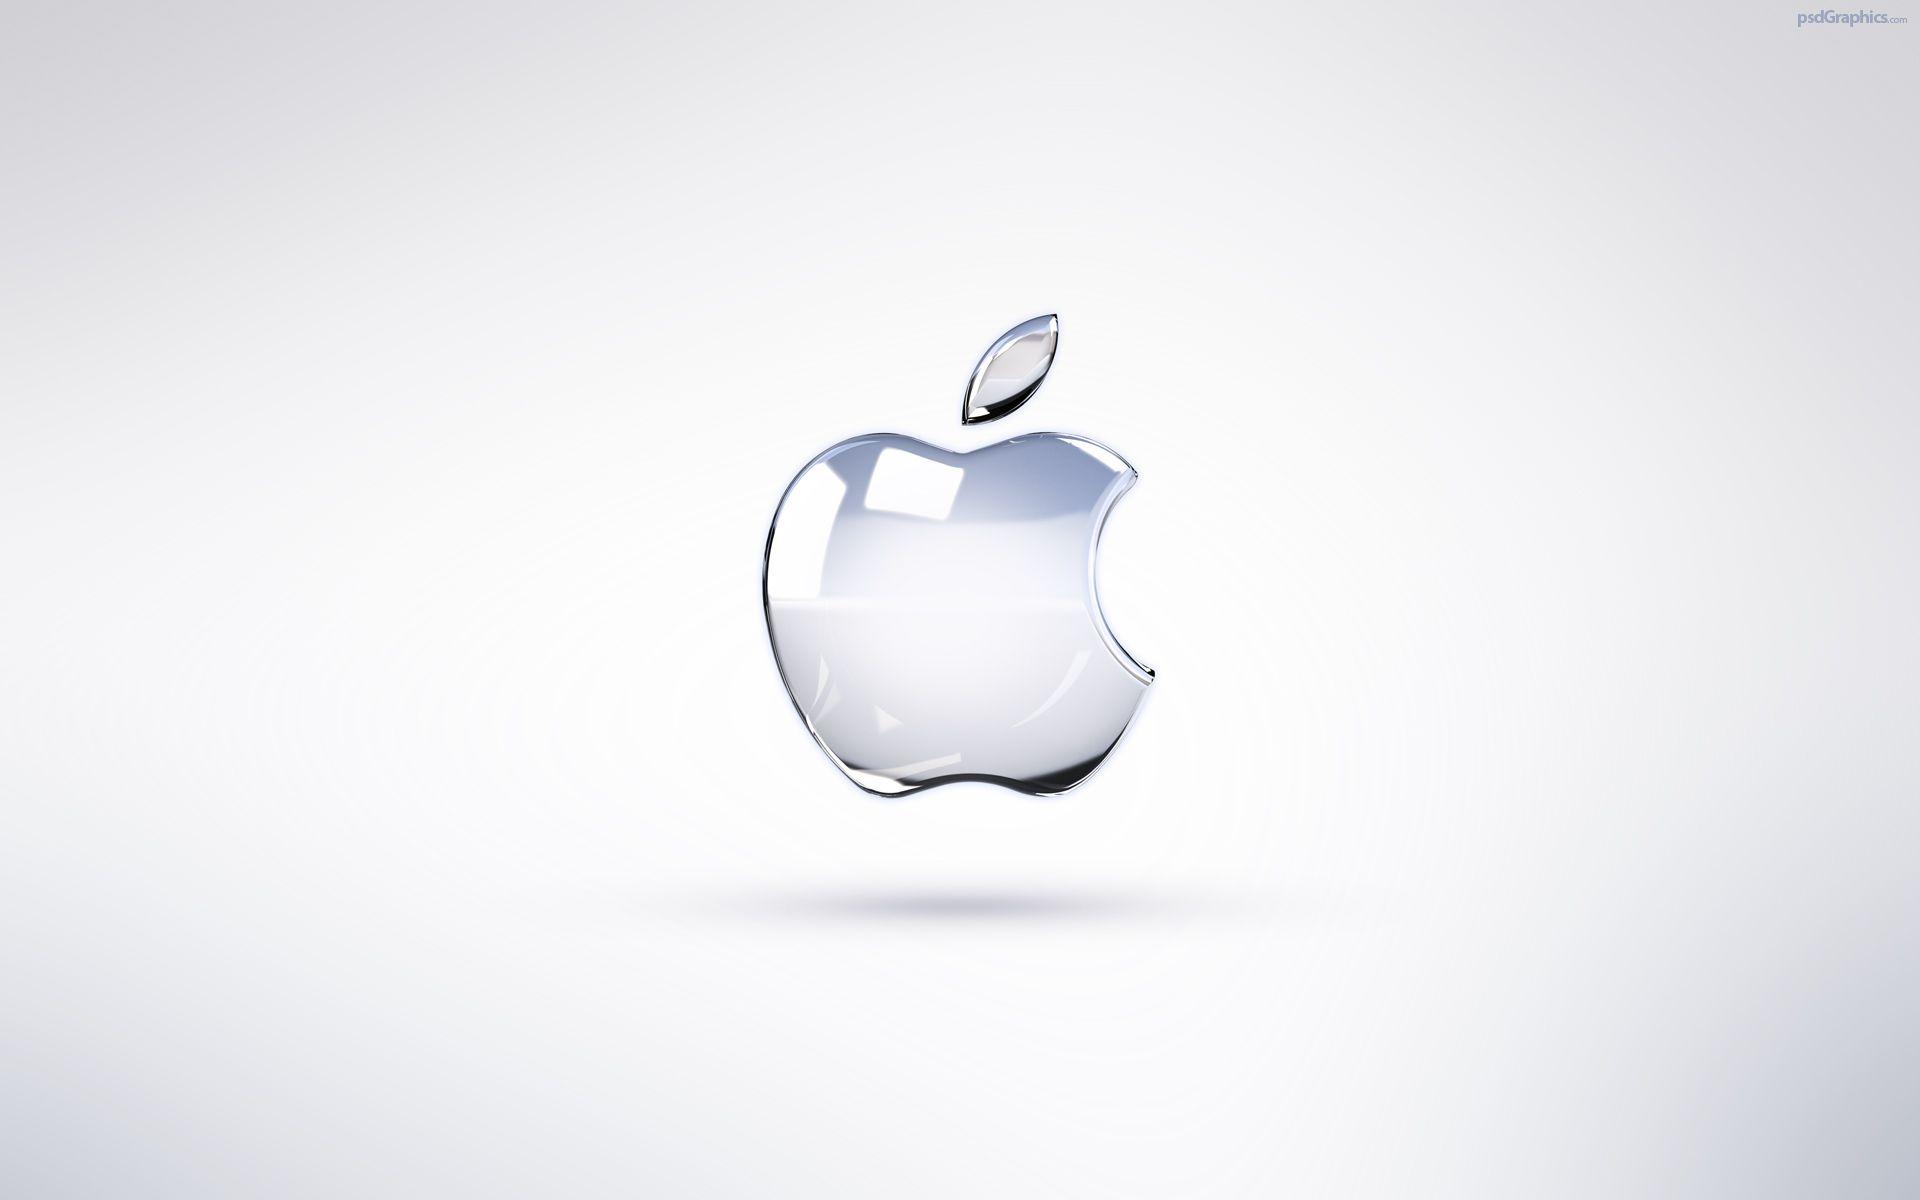 Wallpaper For > White Apple Logo Wallpaper For iPhone